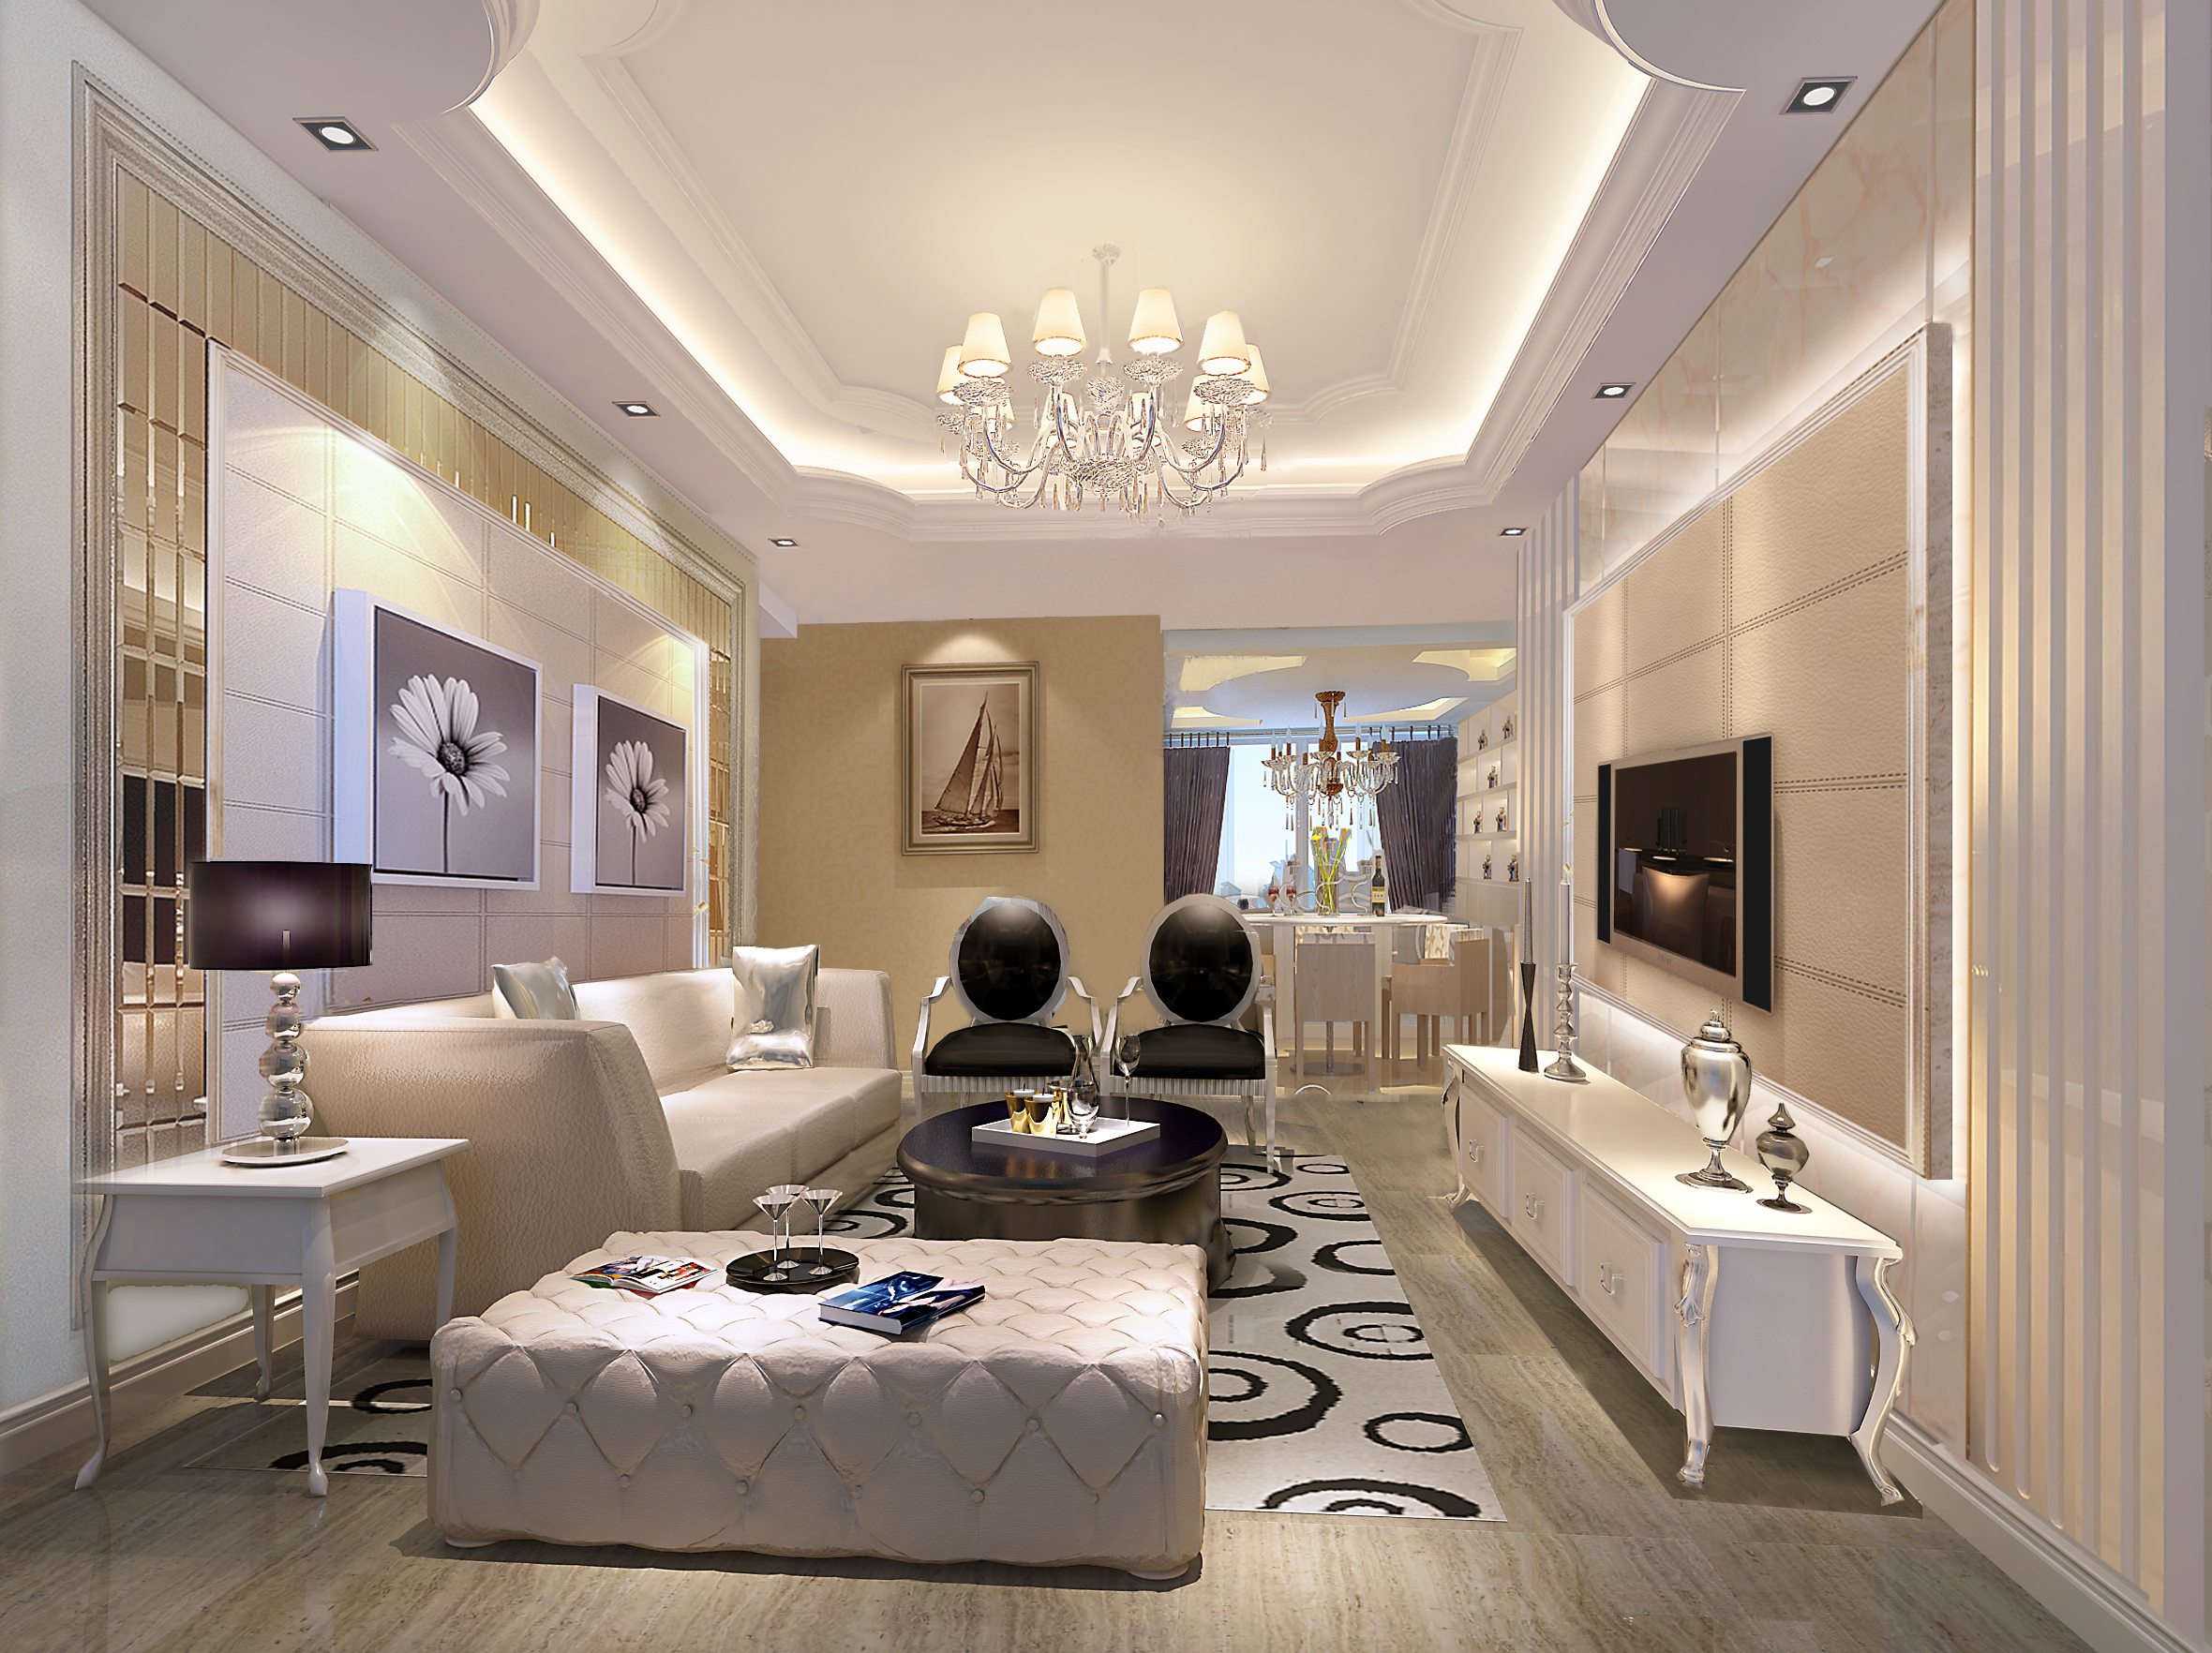 简约 欧式 混搭 别墅 白领 80后 客厅图片来自好易家装饰集团在兰江山地的分享